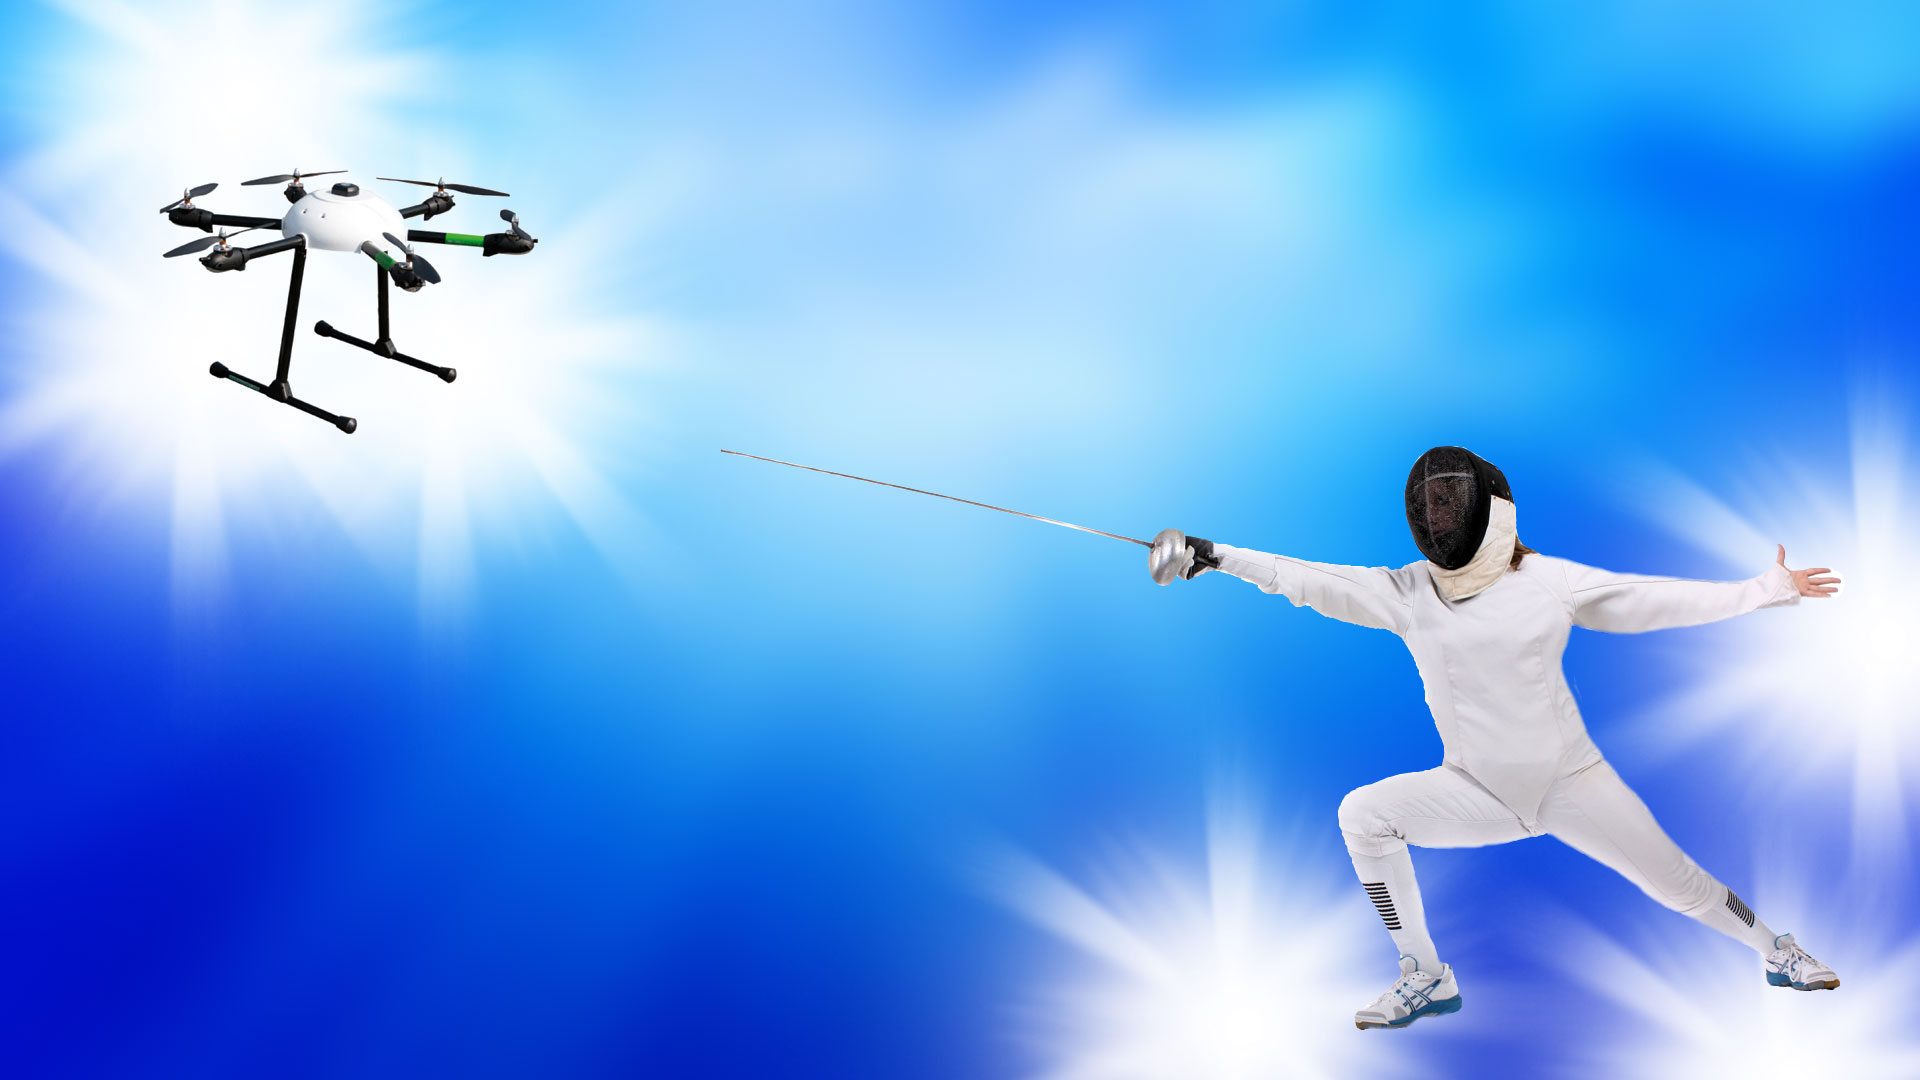 Ce drone intelligent remporte un duel à l’épée contre l'Homme